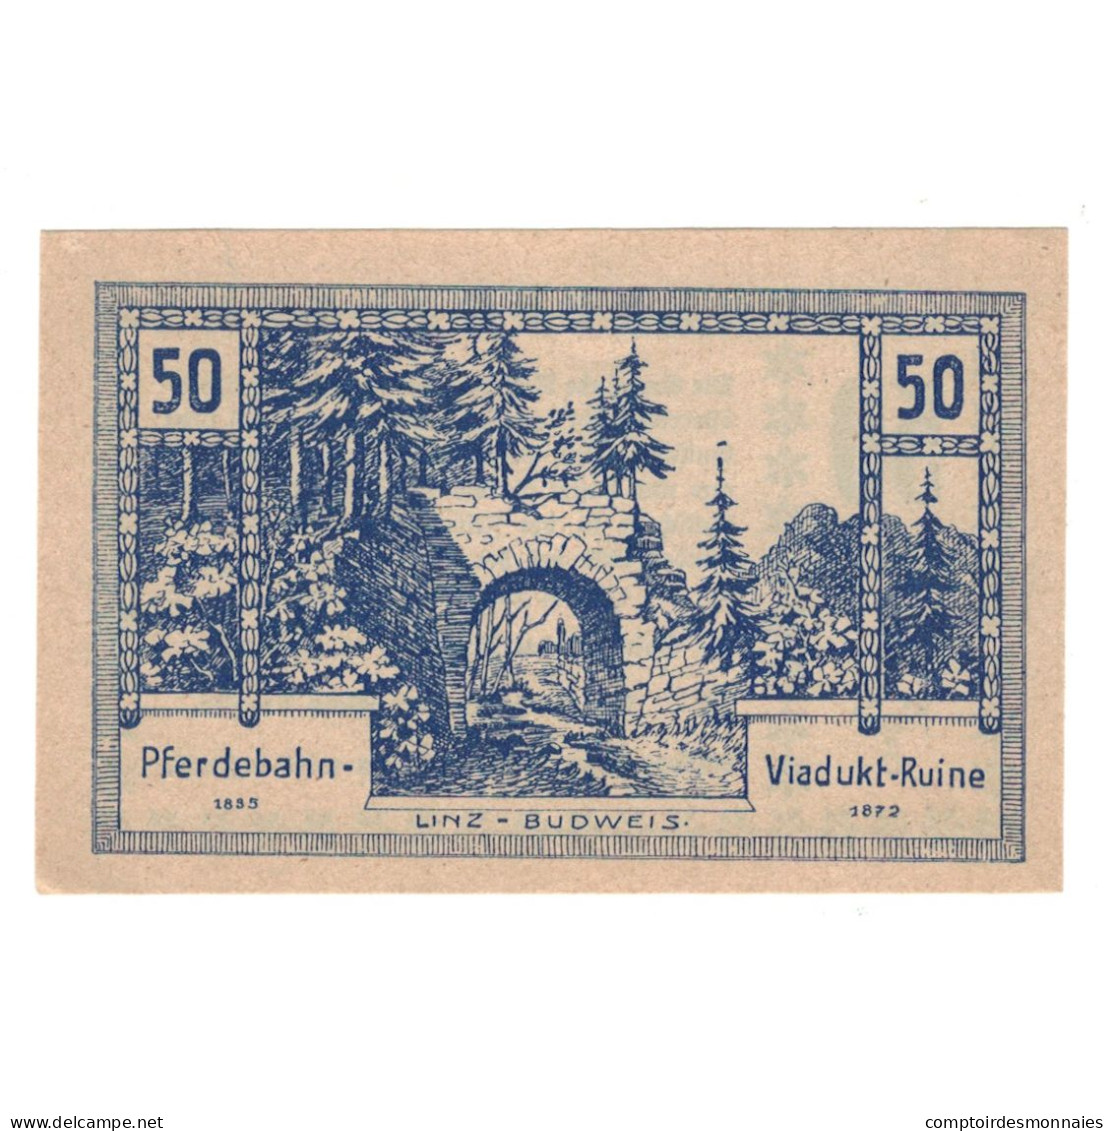 Billet, Autriche, Rainbach O.Ö. Gemeinde, 50 Heller, Texte, 1920, 1920-12-31 - Oesterreich